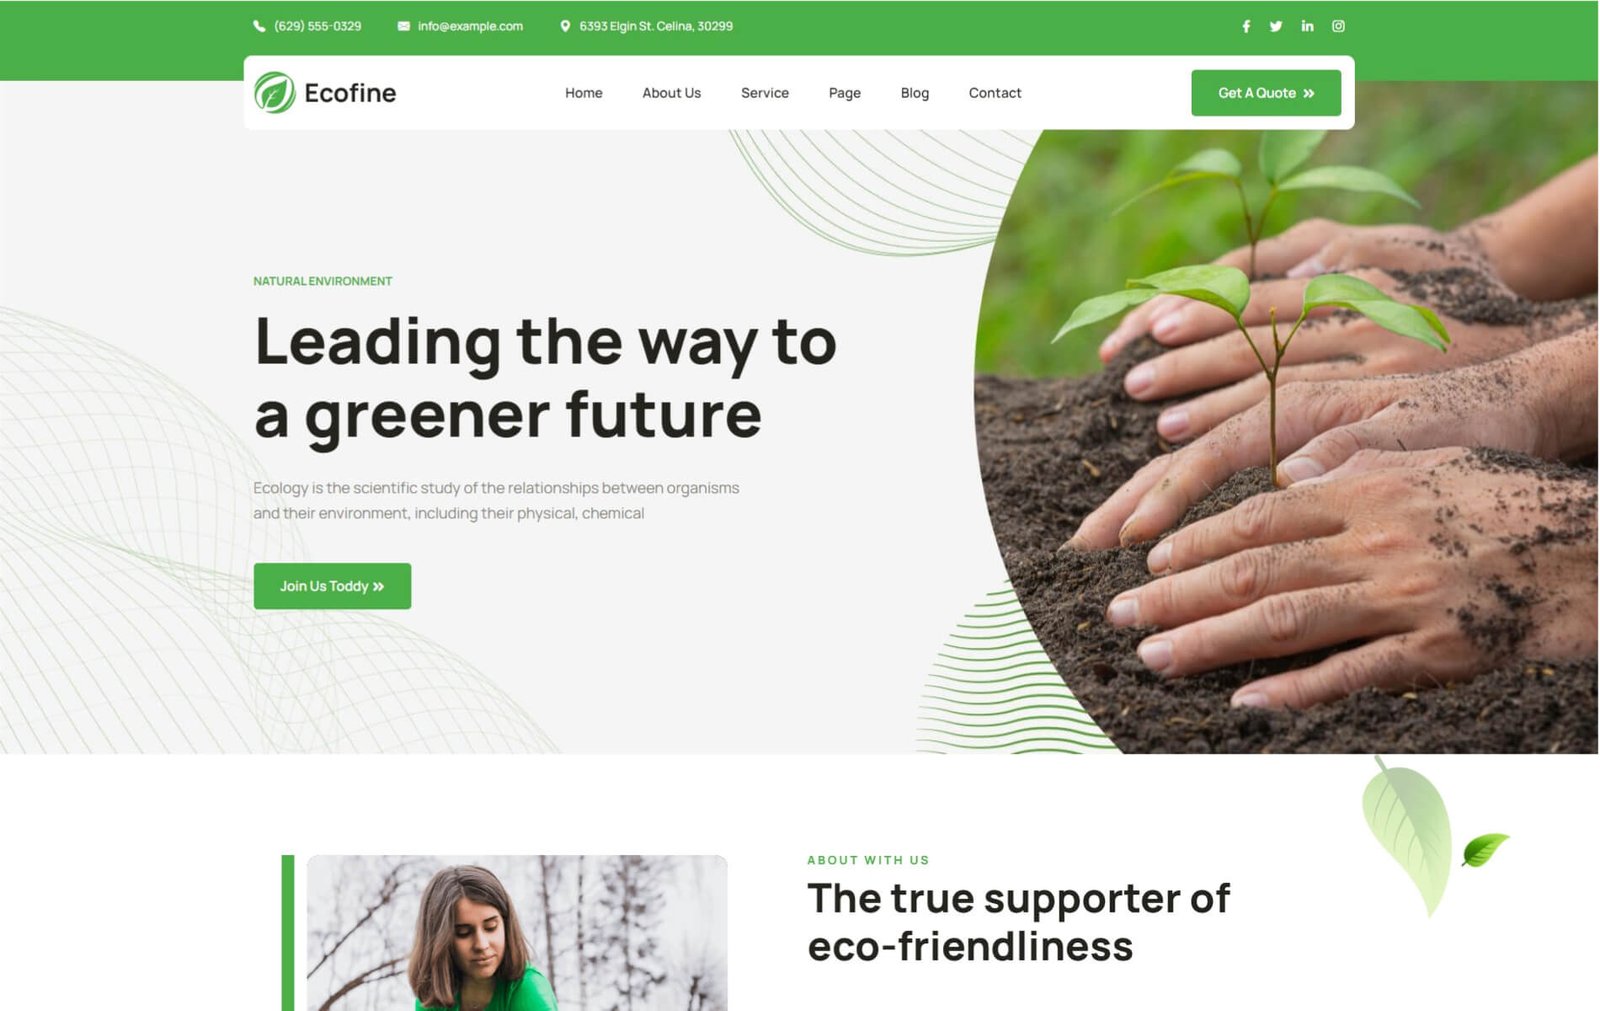 Ecofine - Ecology & Environment WordPress Theme